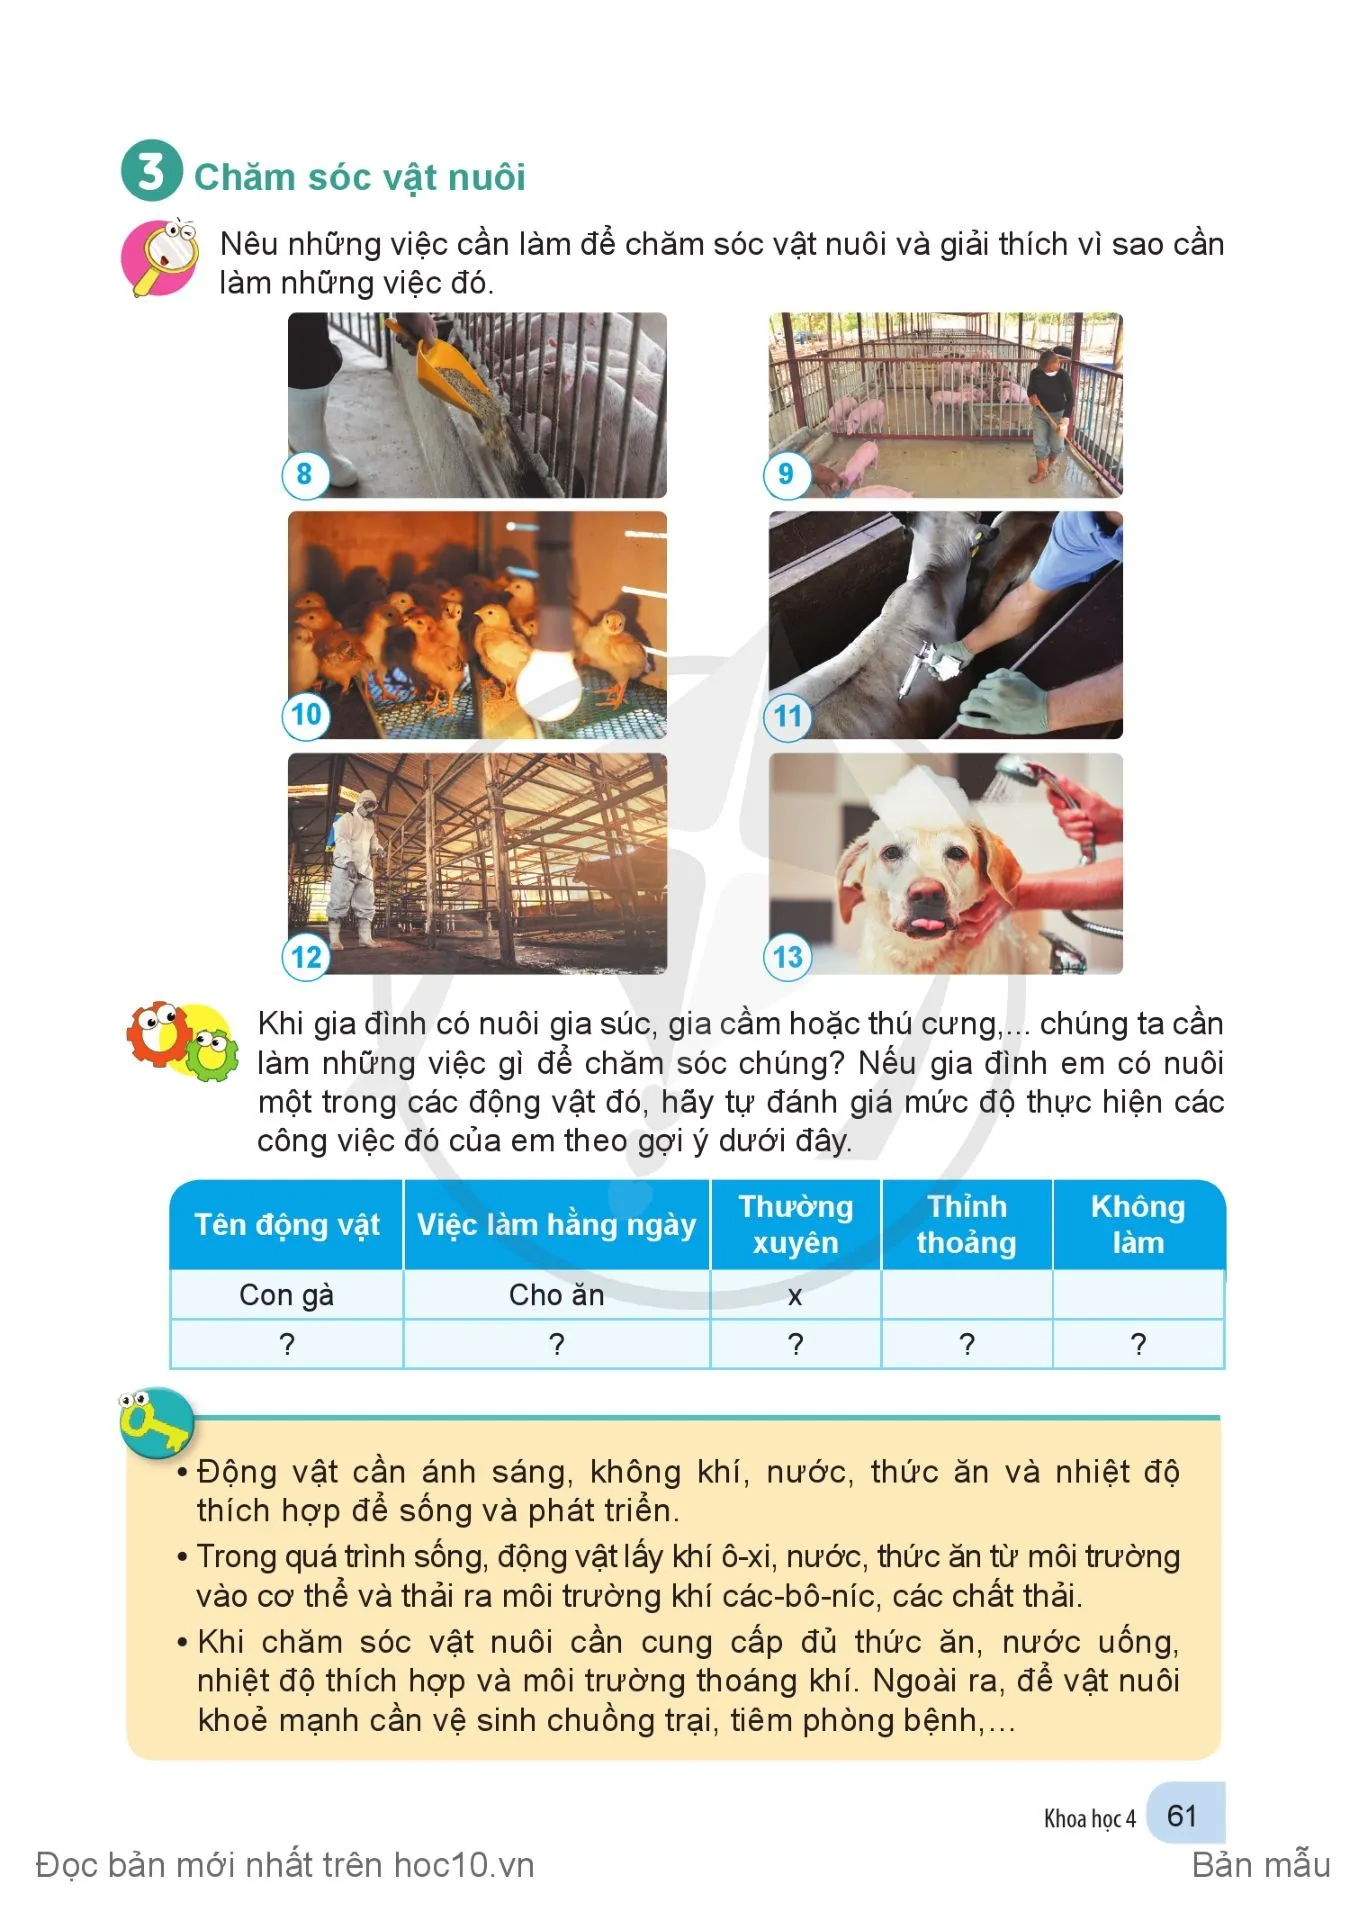 Bài 14. Nhu cầu sống của động vật và chăm sóc vật nuôi